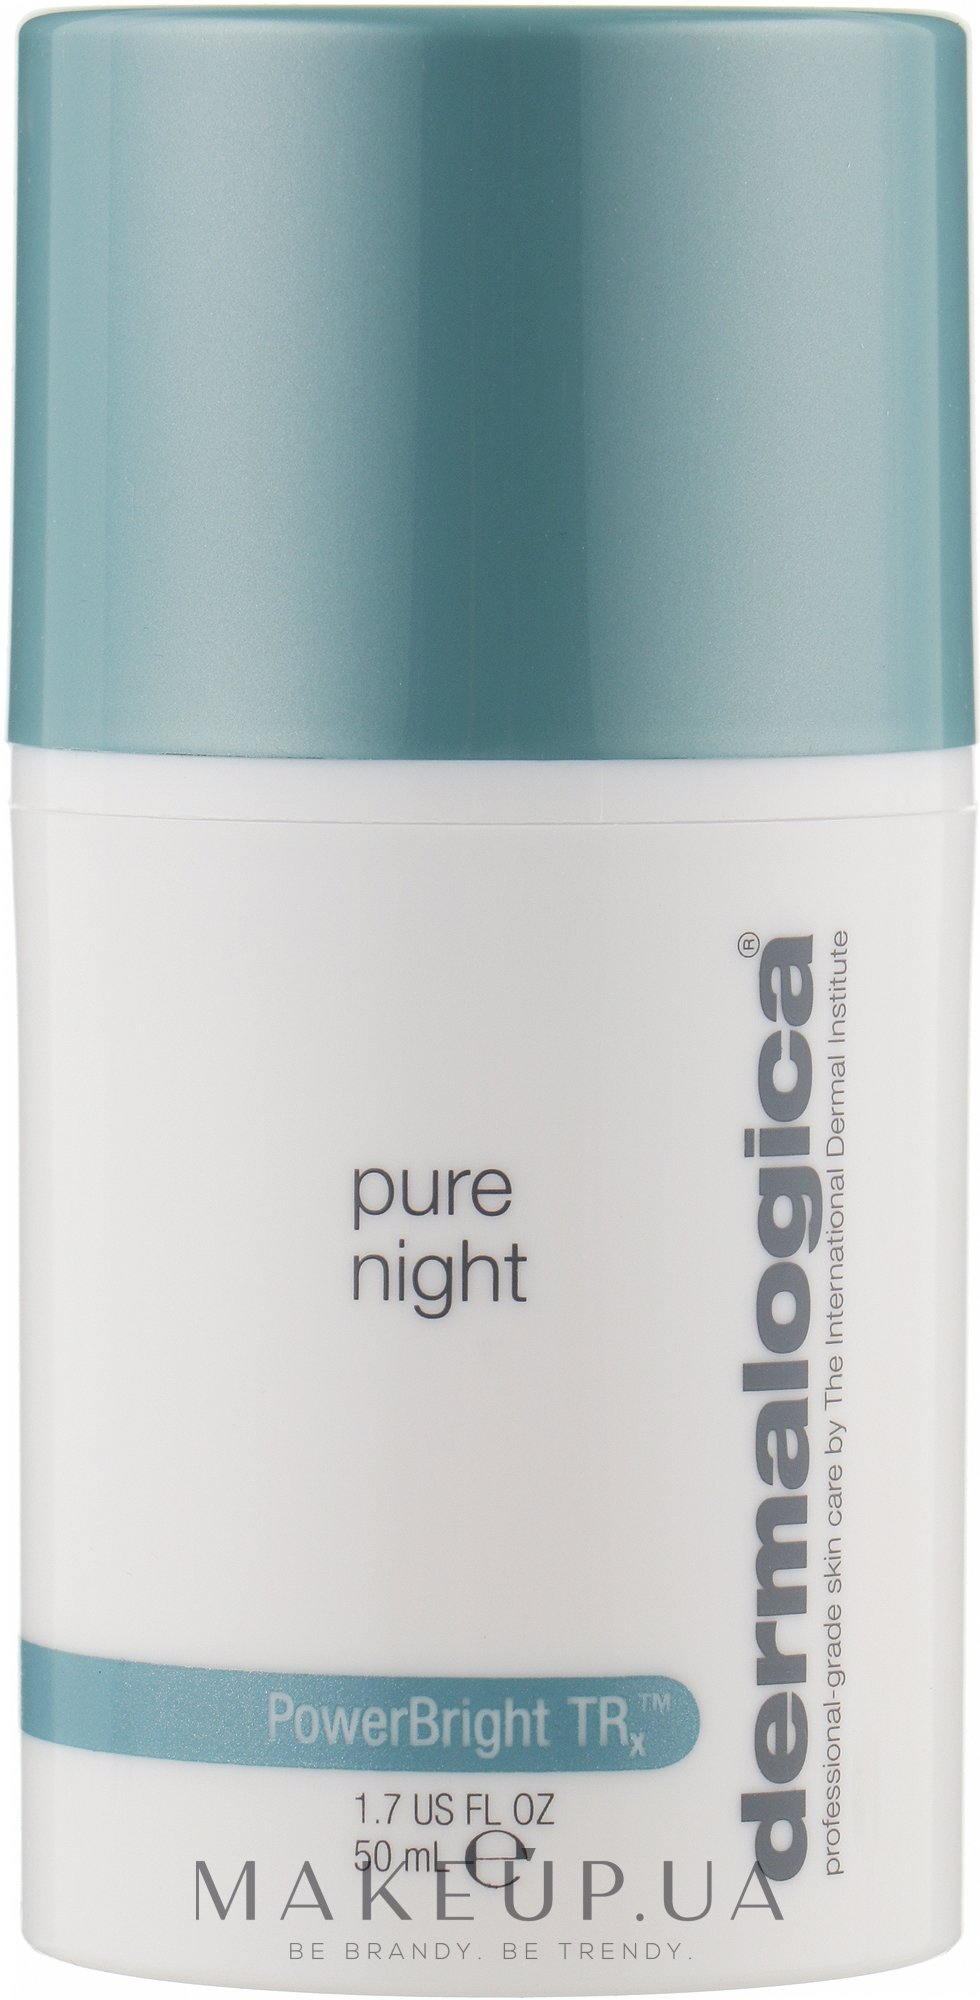 Ночной крем для ровного цвета и сияния лица - Dermalogica Powerbright TRX Pure Night — фото 50ml